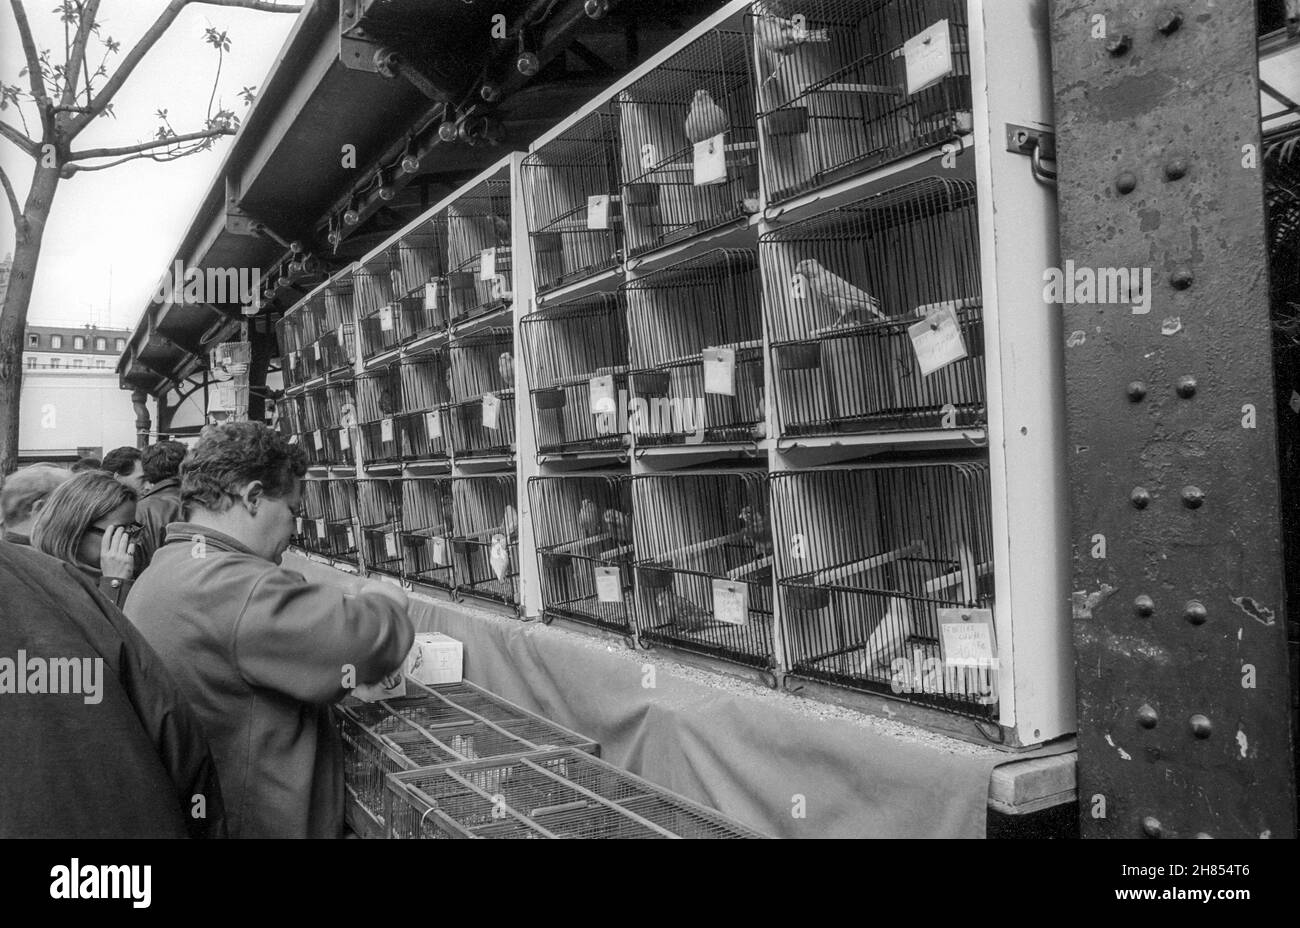 April 1993 archive black & white photograph of the Paris bird market or Marché aux oiseaux. Stock Photo